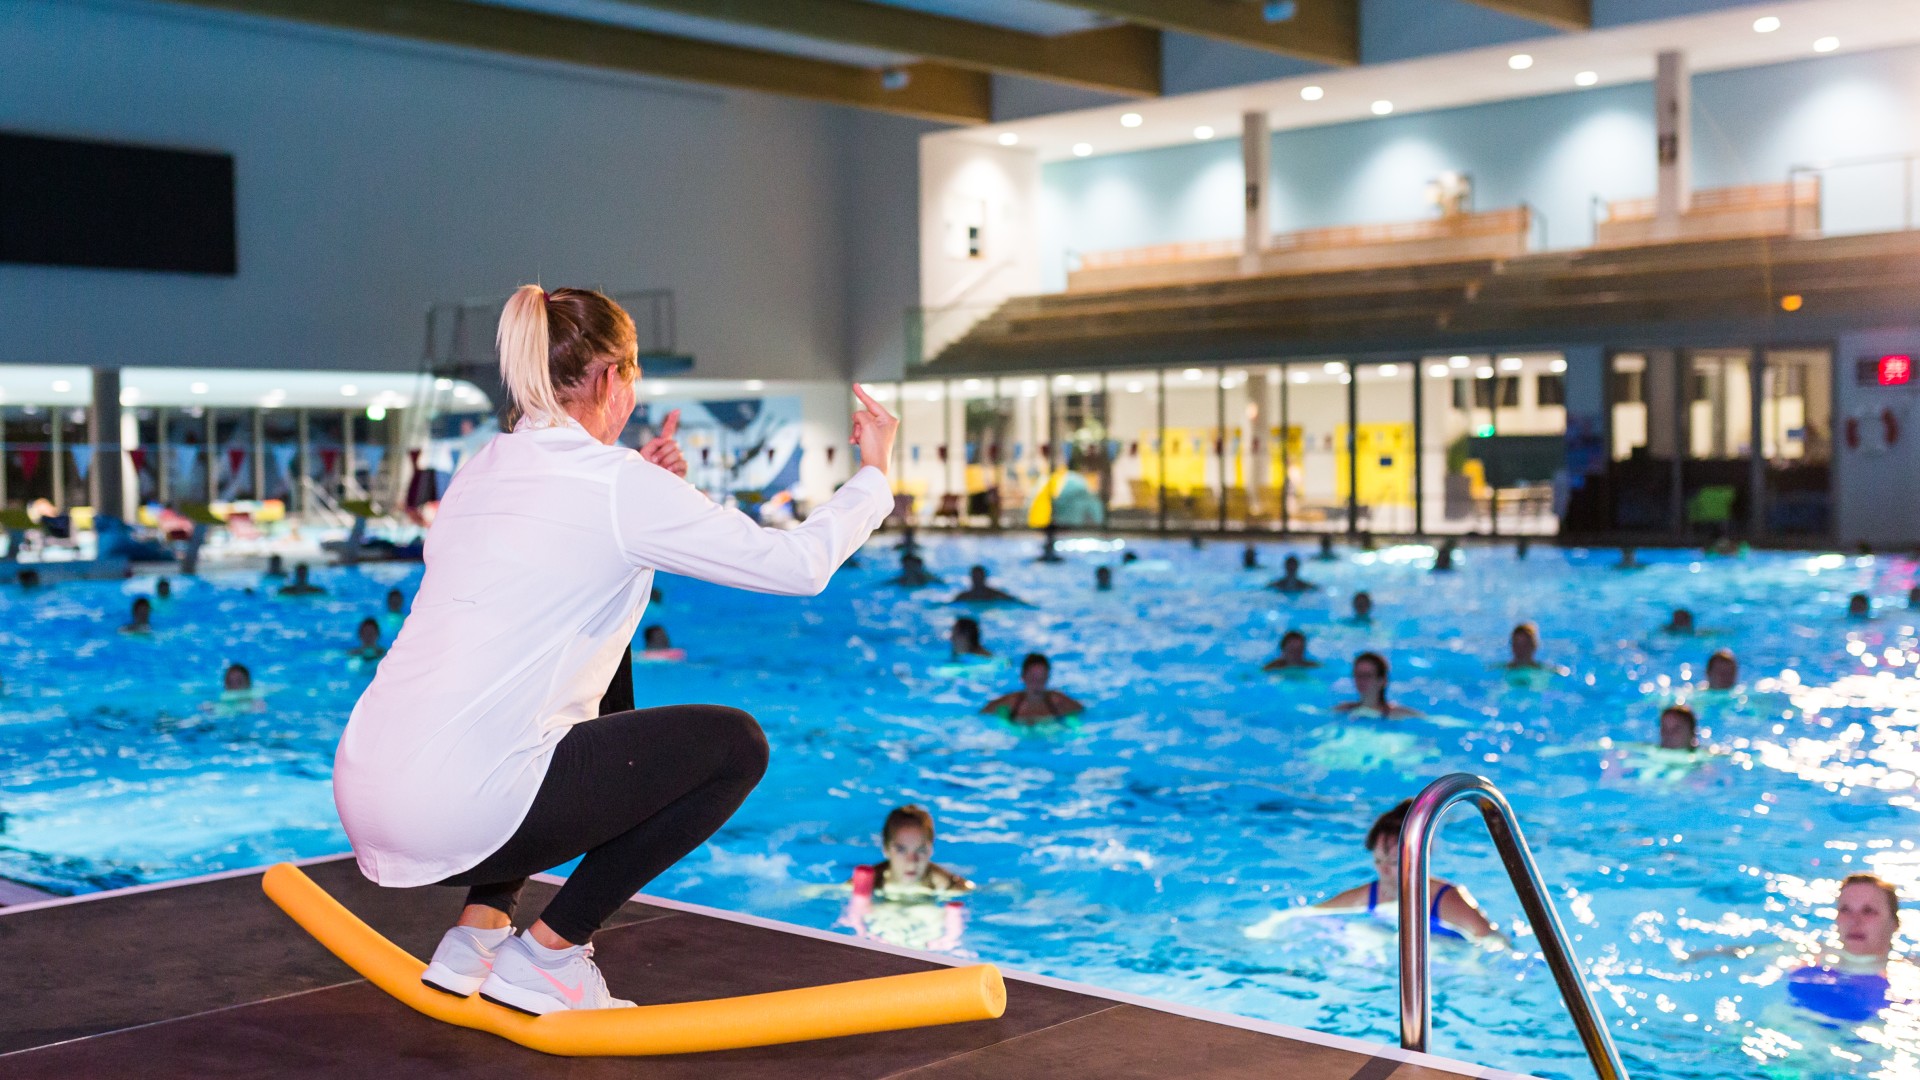 Aquafitness-Trainerin hockend auf einer Poolnudel auf der Bühne erklärt den Teilnehmer eine Übung, © SekundenstillFotografie